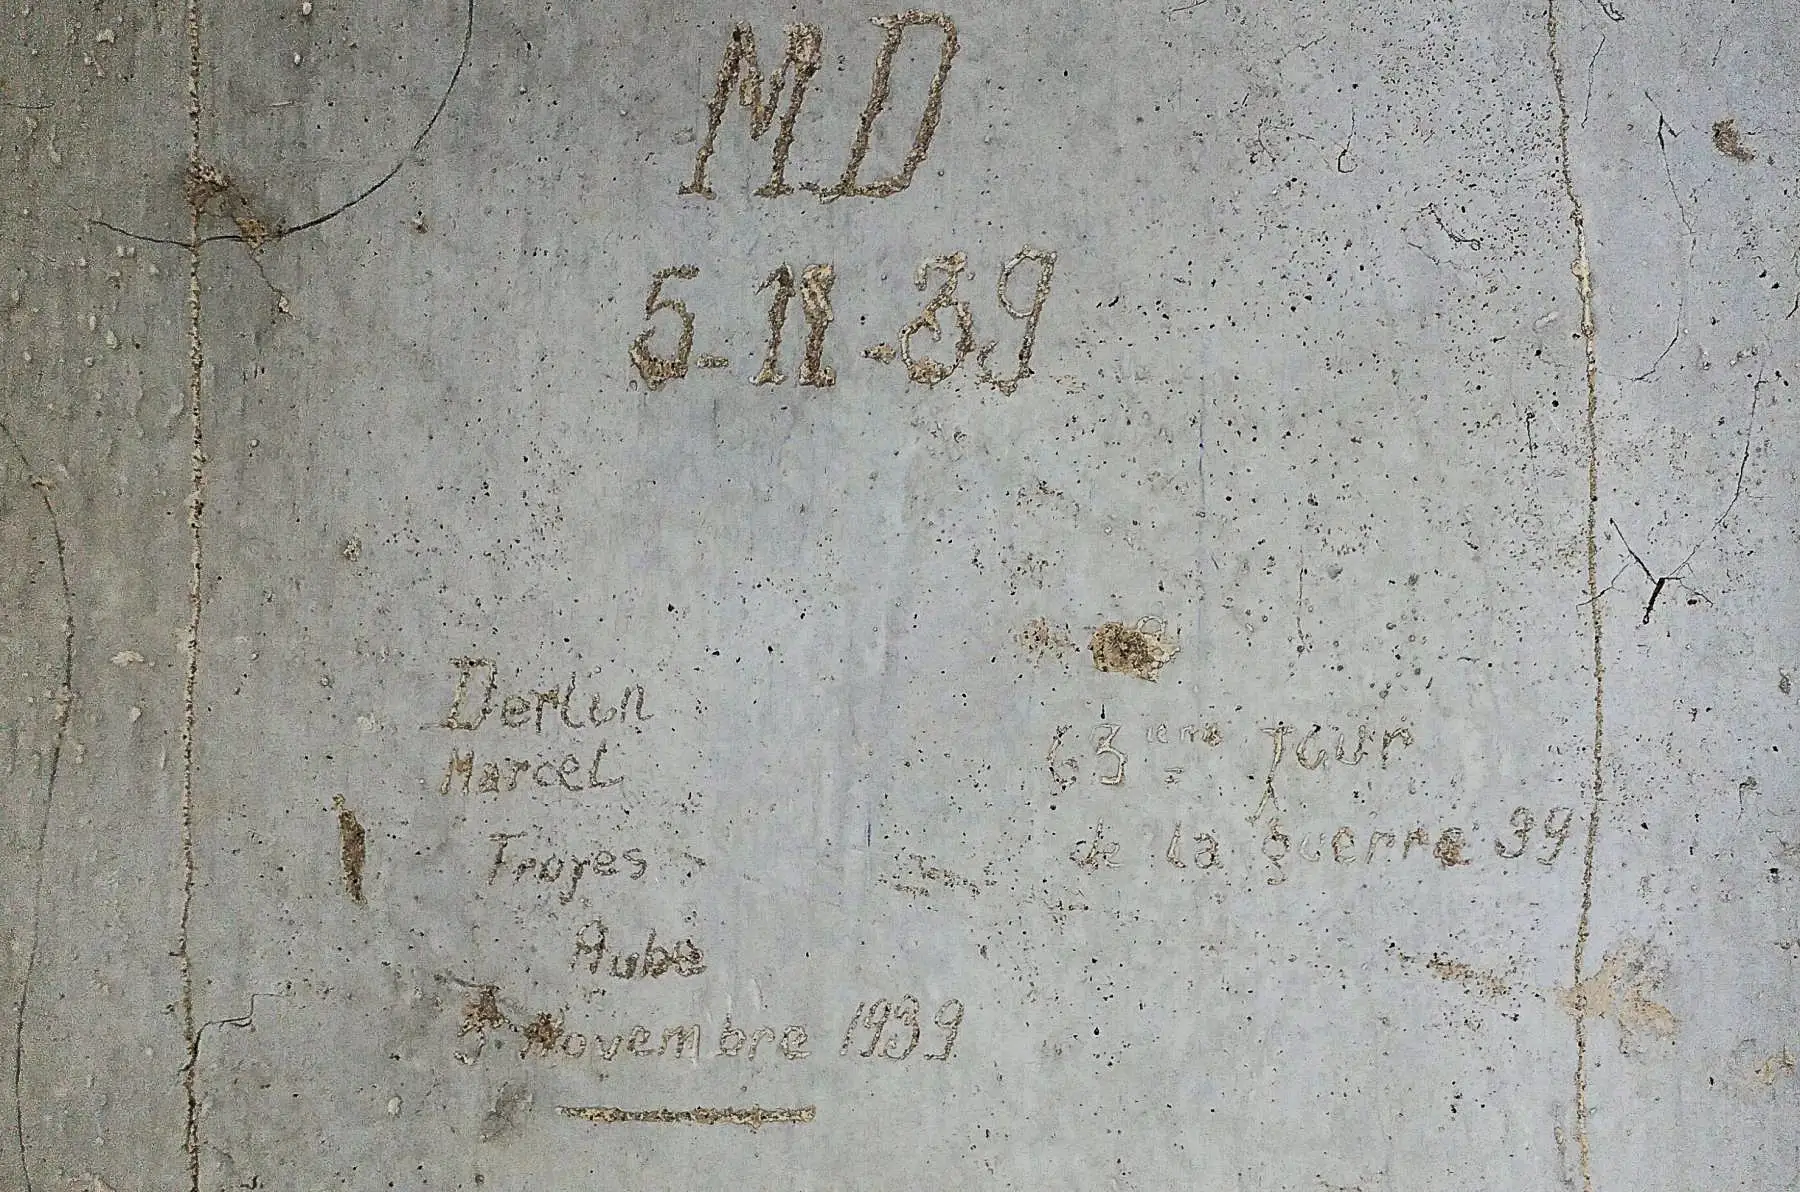 Ligne Maginot - I11 - (Abri) - Marcel Derlin
Troyes, Aube
5/11/39 '63 éime jour de la guerre 39'